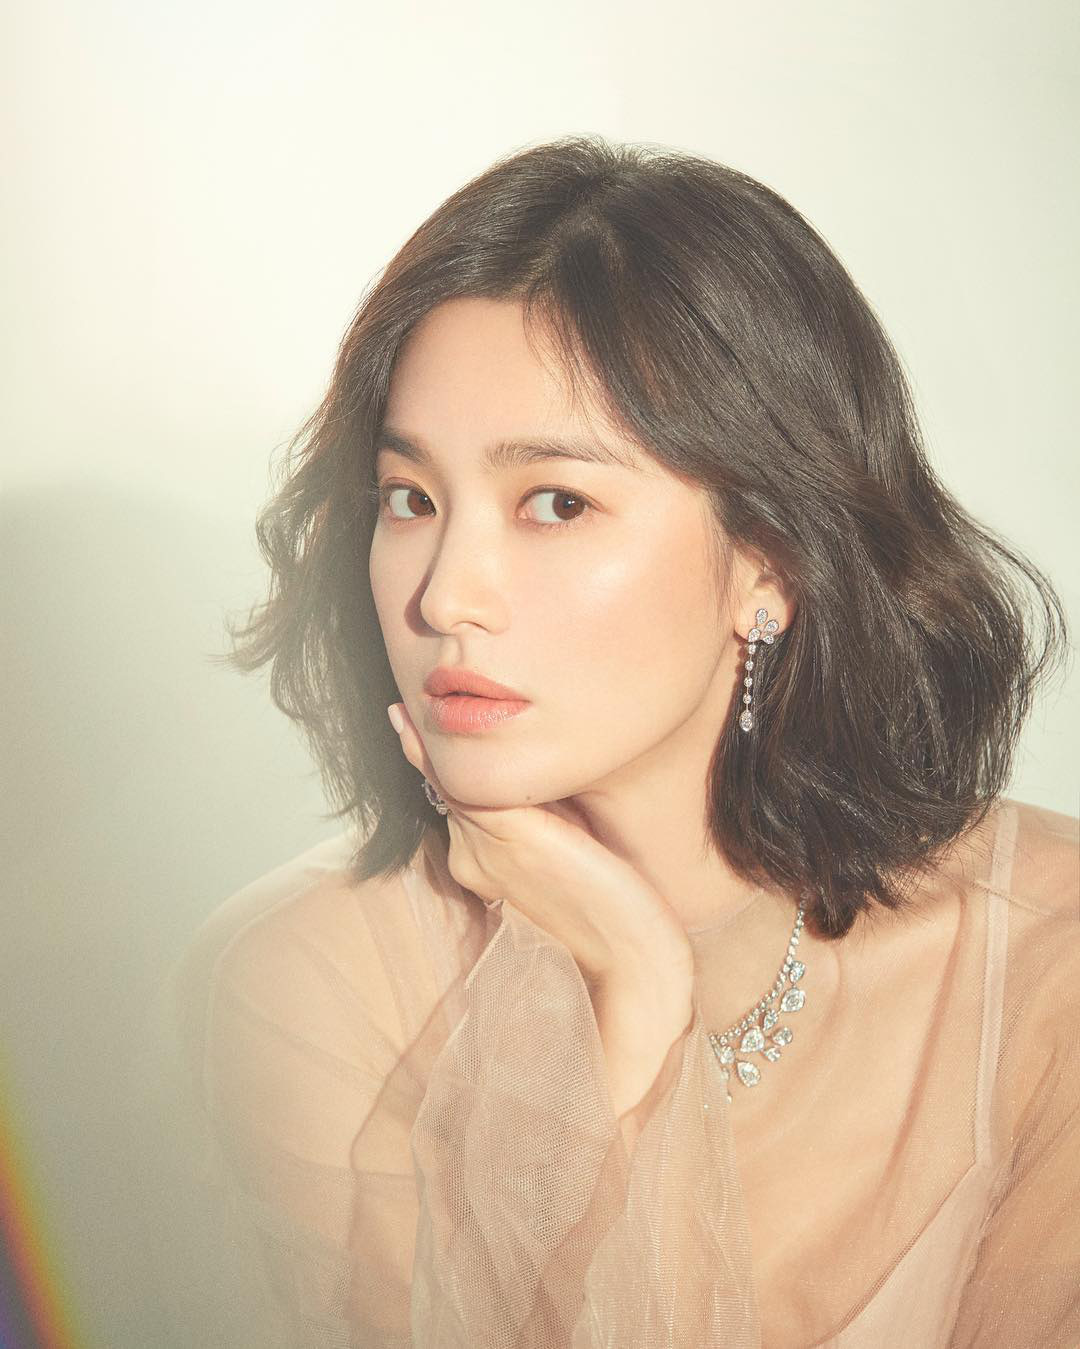 Nhìn tuyển tập ảnh mặt mộc ít son phấn của Song Hye Kyo, người ta sẽ biết nhan sắc của cô thần thánh đến độ nào - Ảnh 2.